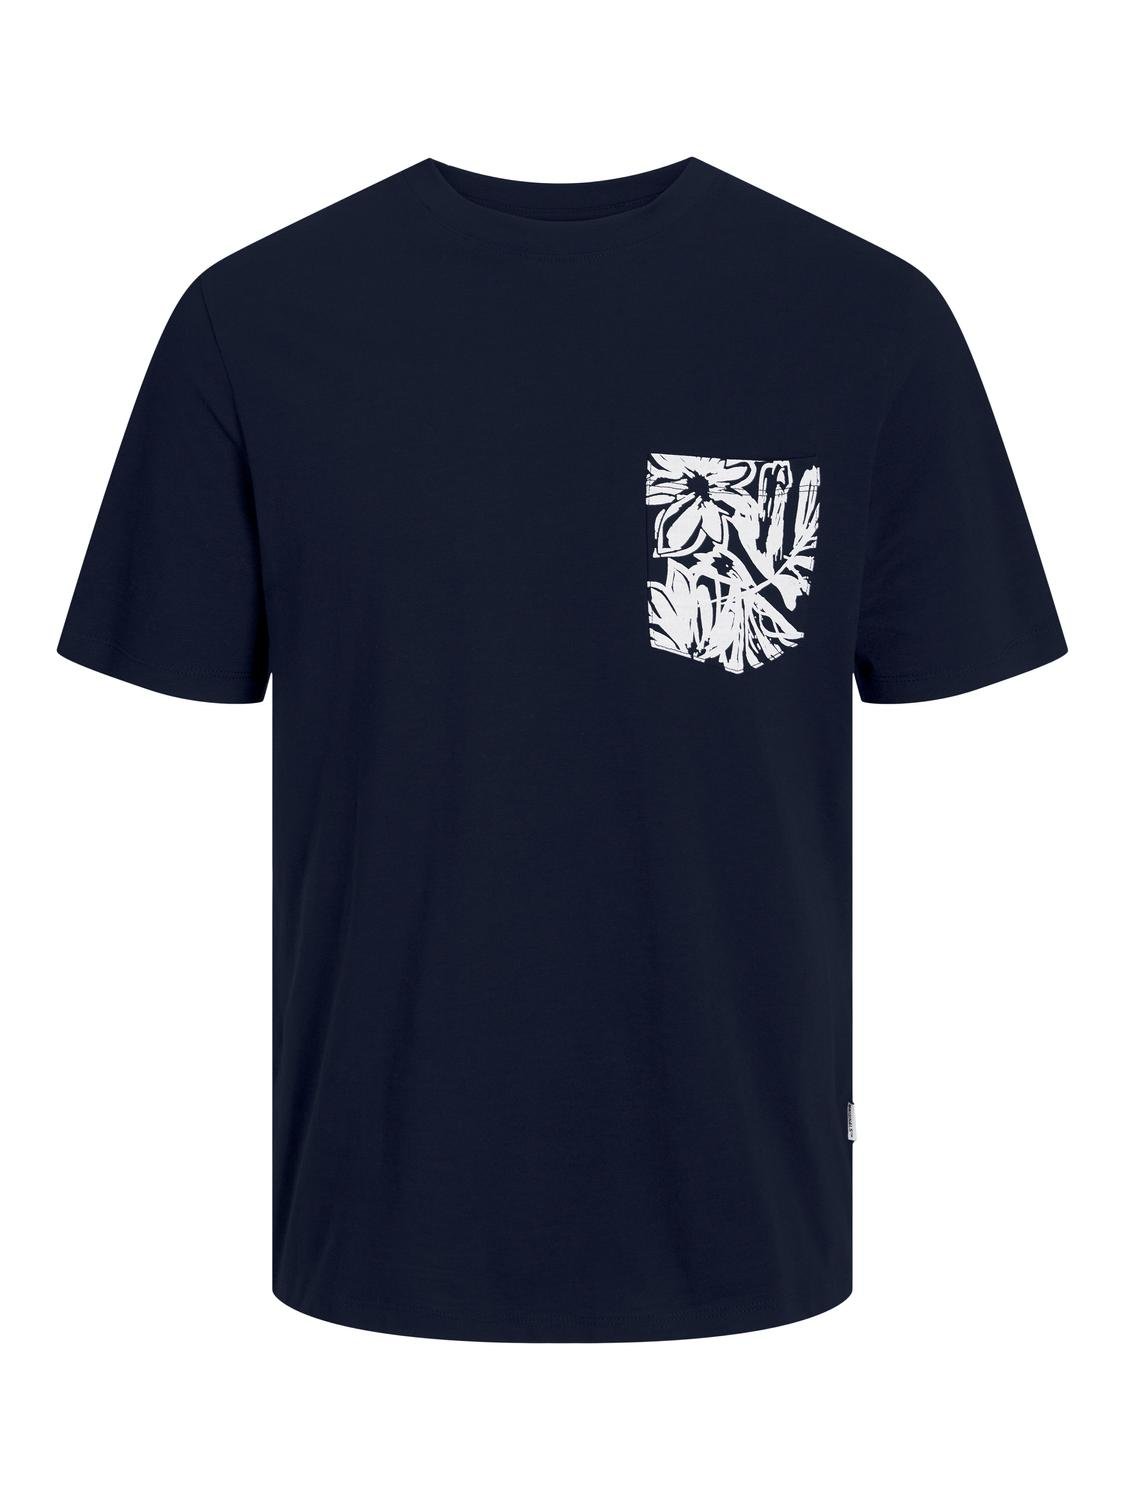 Jack & Jones T-shirt Estampar Mini -Sky Captain - 12257434